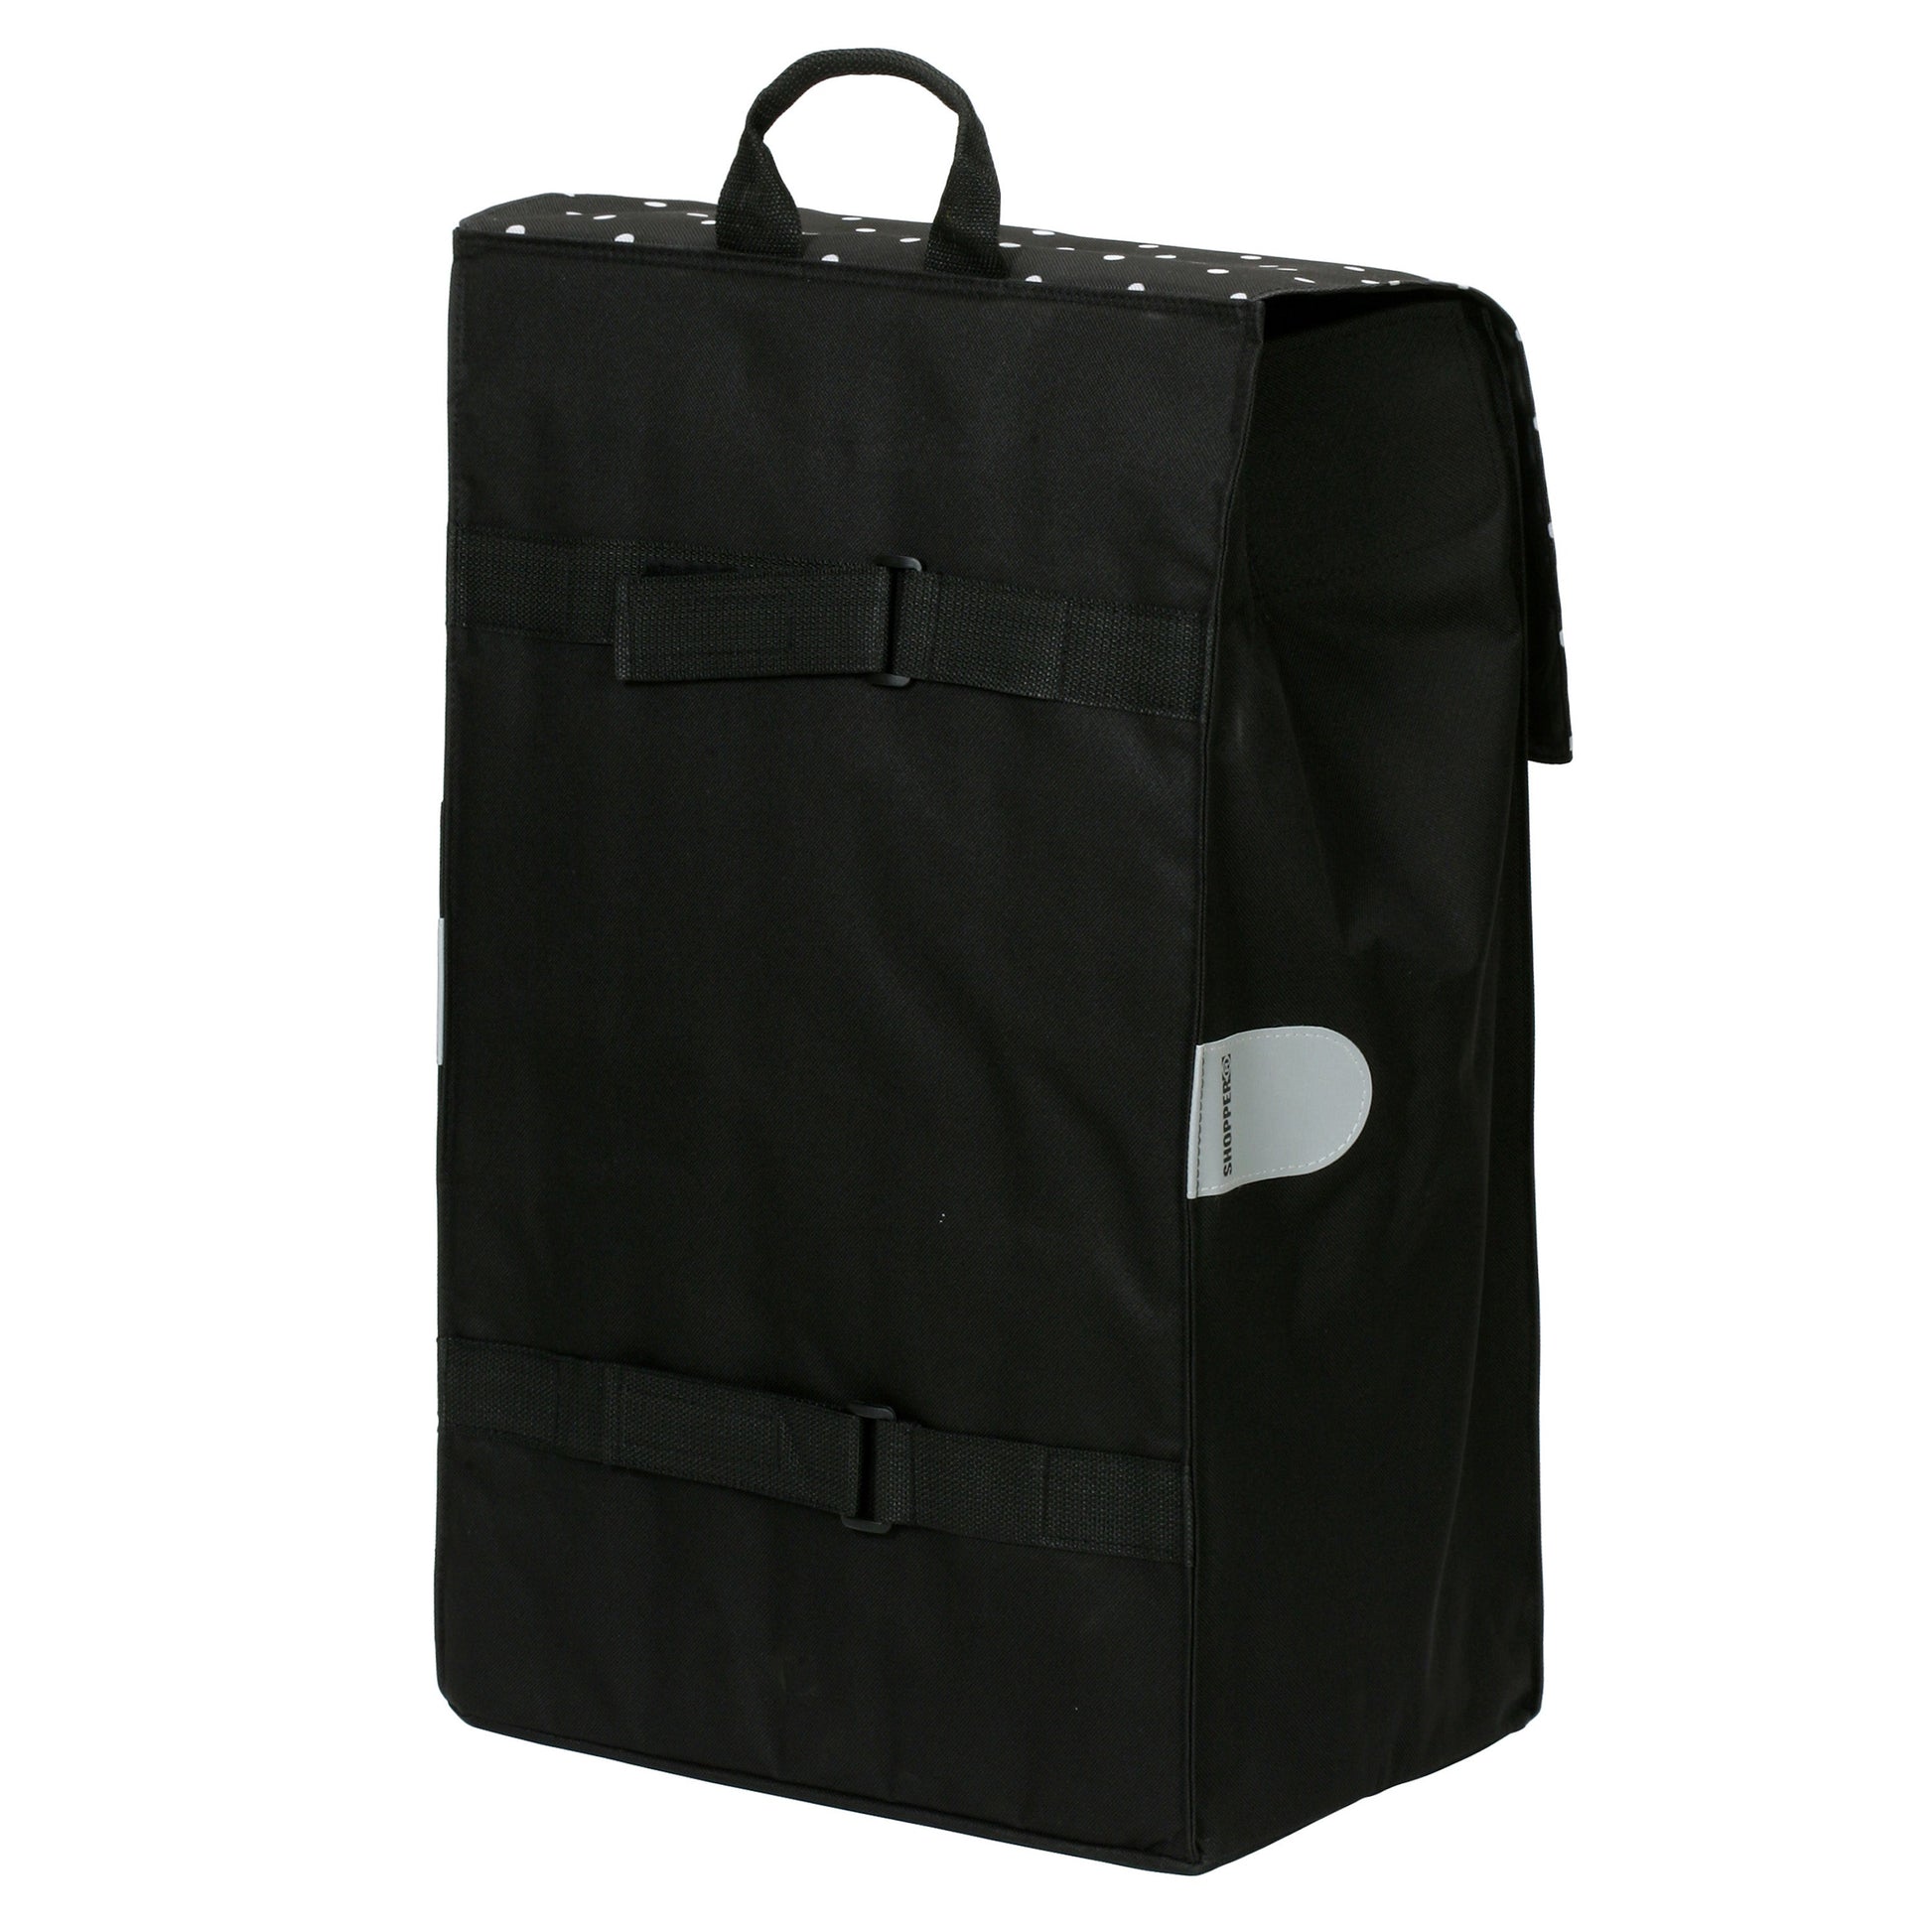 Tasche Malit schwarz-Artikelnummer-2-044-80-Bild-2-von-www.shopping-trolley.ch